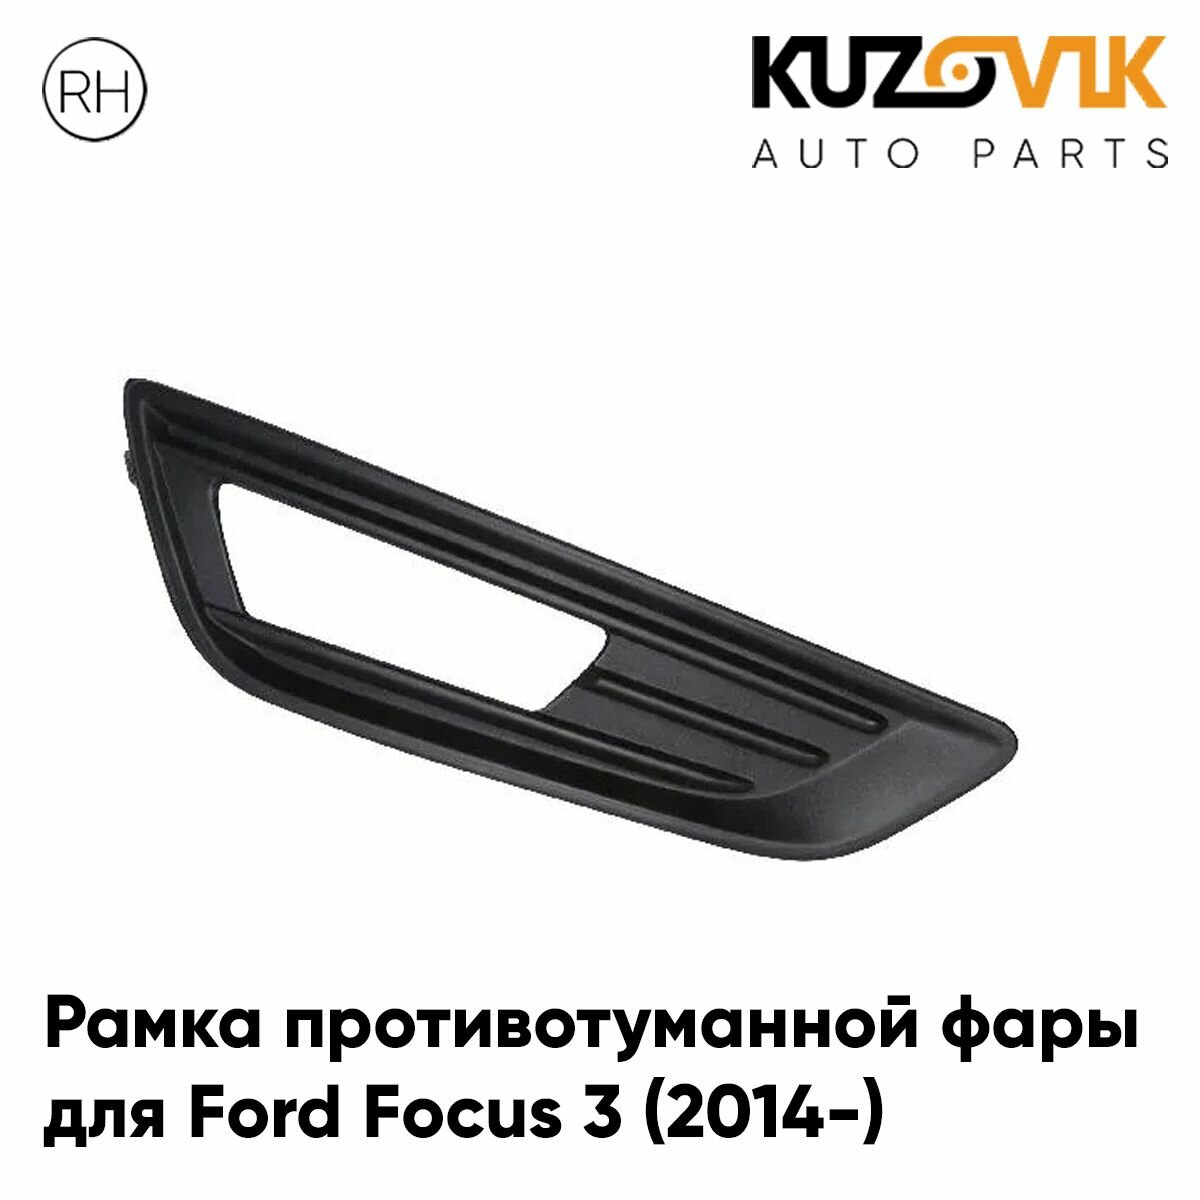 Рамка противотуманной фары для Форд Фокус Ford Focus 3 (2014-) рестайлинг черная правая, накладка, птф, туманка